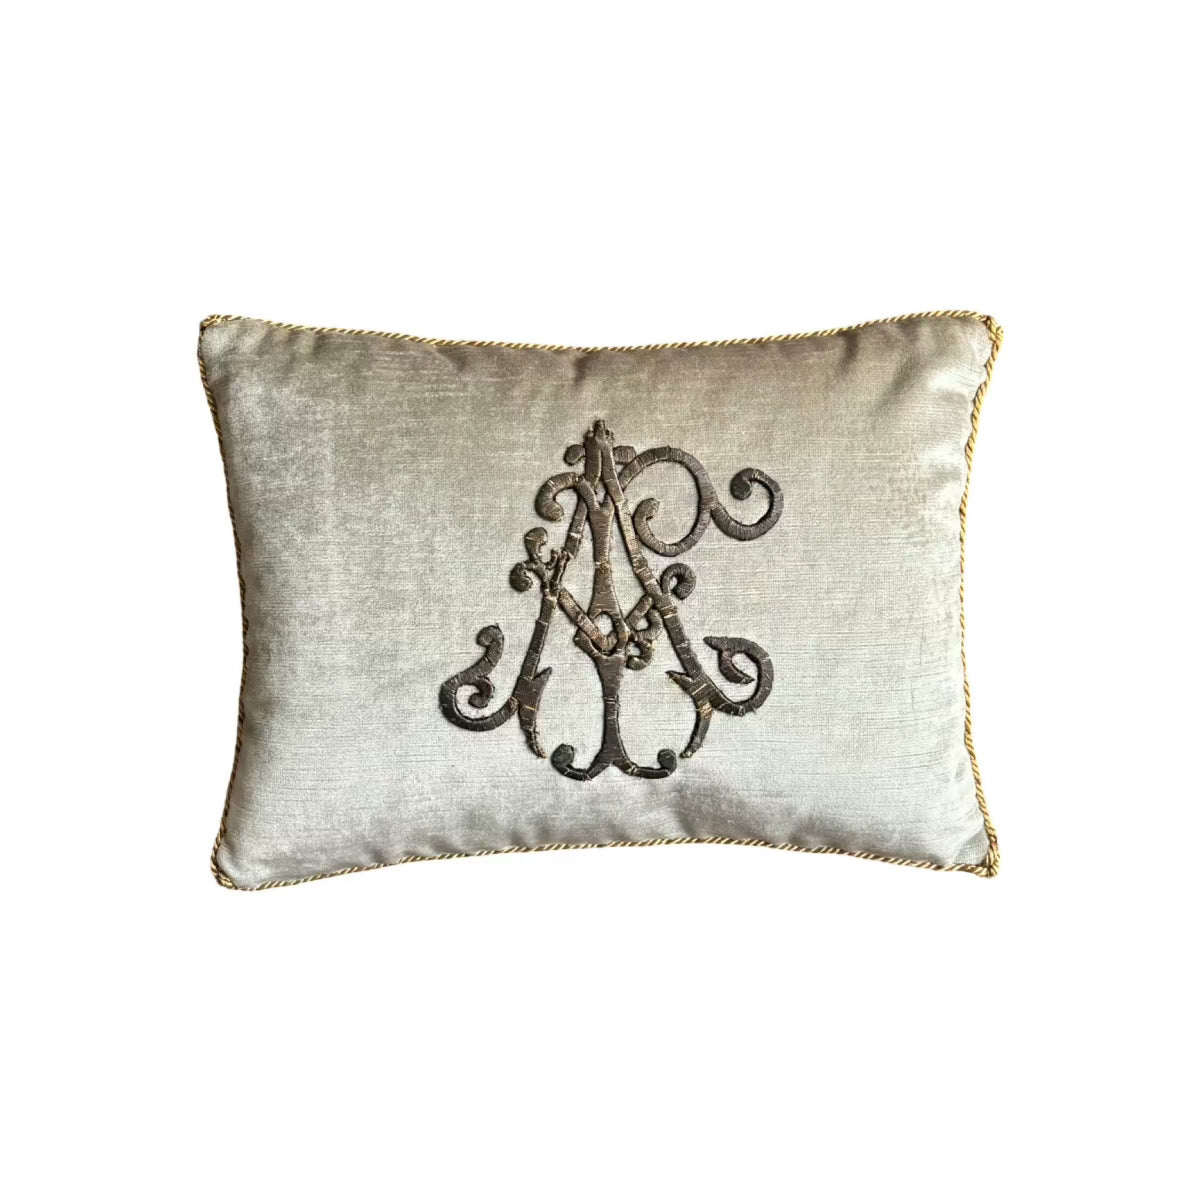 Antique European Raised Gold Metallic Embroidery (#E021224 | 11 x 15") New Pillows B. Viz Design 